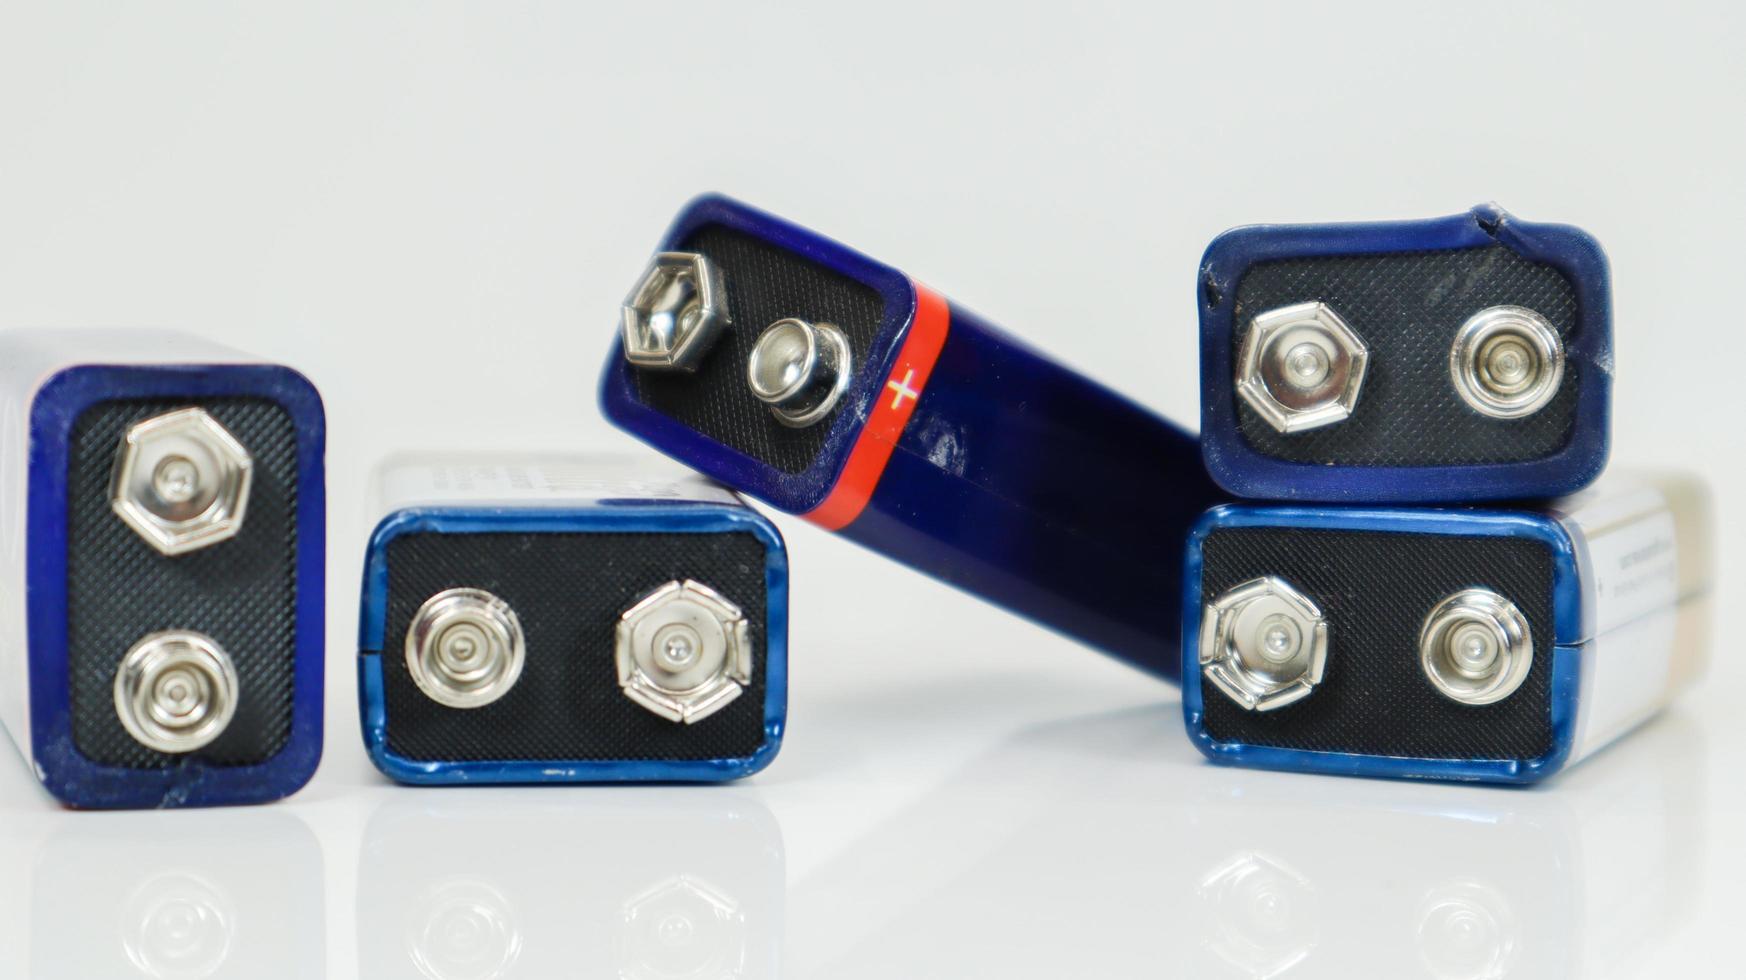 cinq piles pp3 bleues utilisées, disposées de manière chaotique et dispersées sur un fond blanc avec reflet. batterie principale pour les alimentations personnelles. gros plan d'un connecteur de batterie rayé et usé. photo